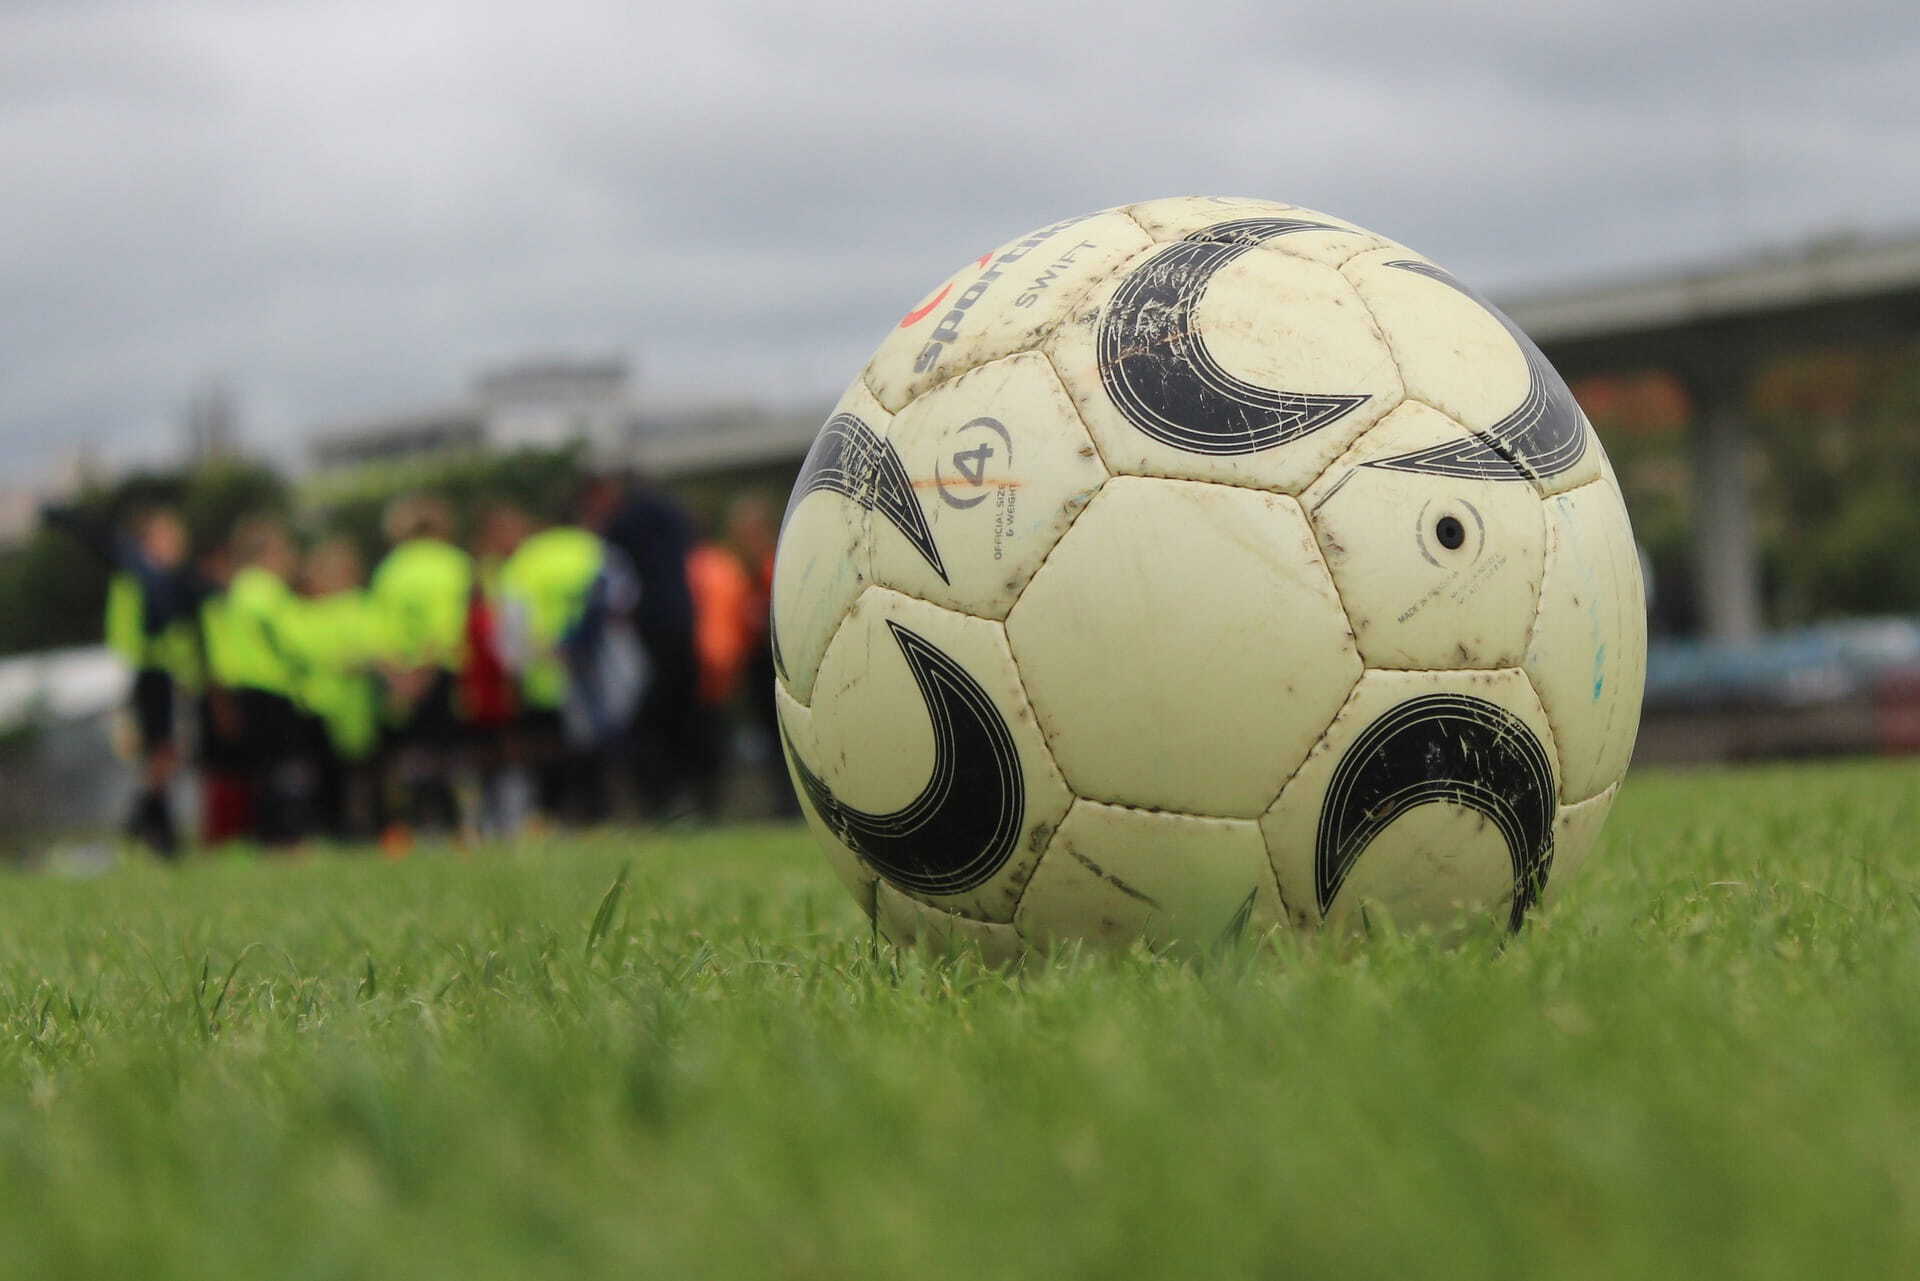 calcio serie a 2020 2021 risultati classifica ultima giornata campionato partite foto pexels pixabay